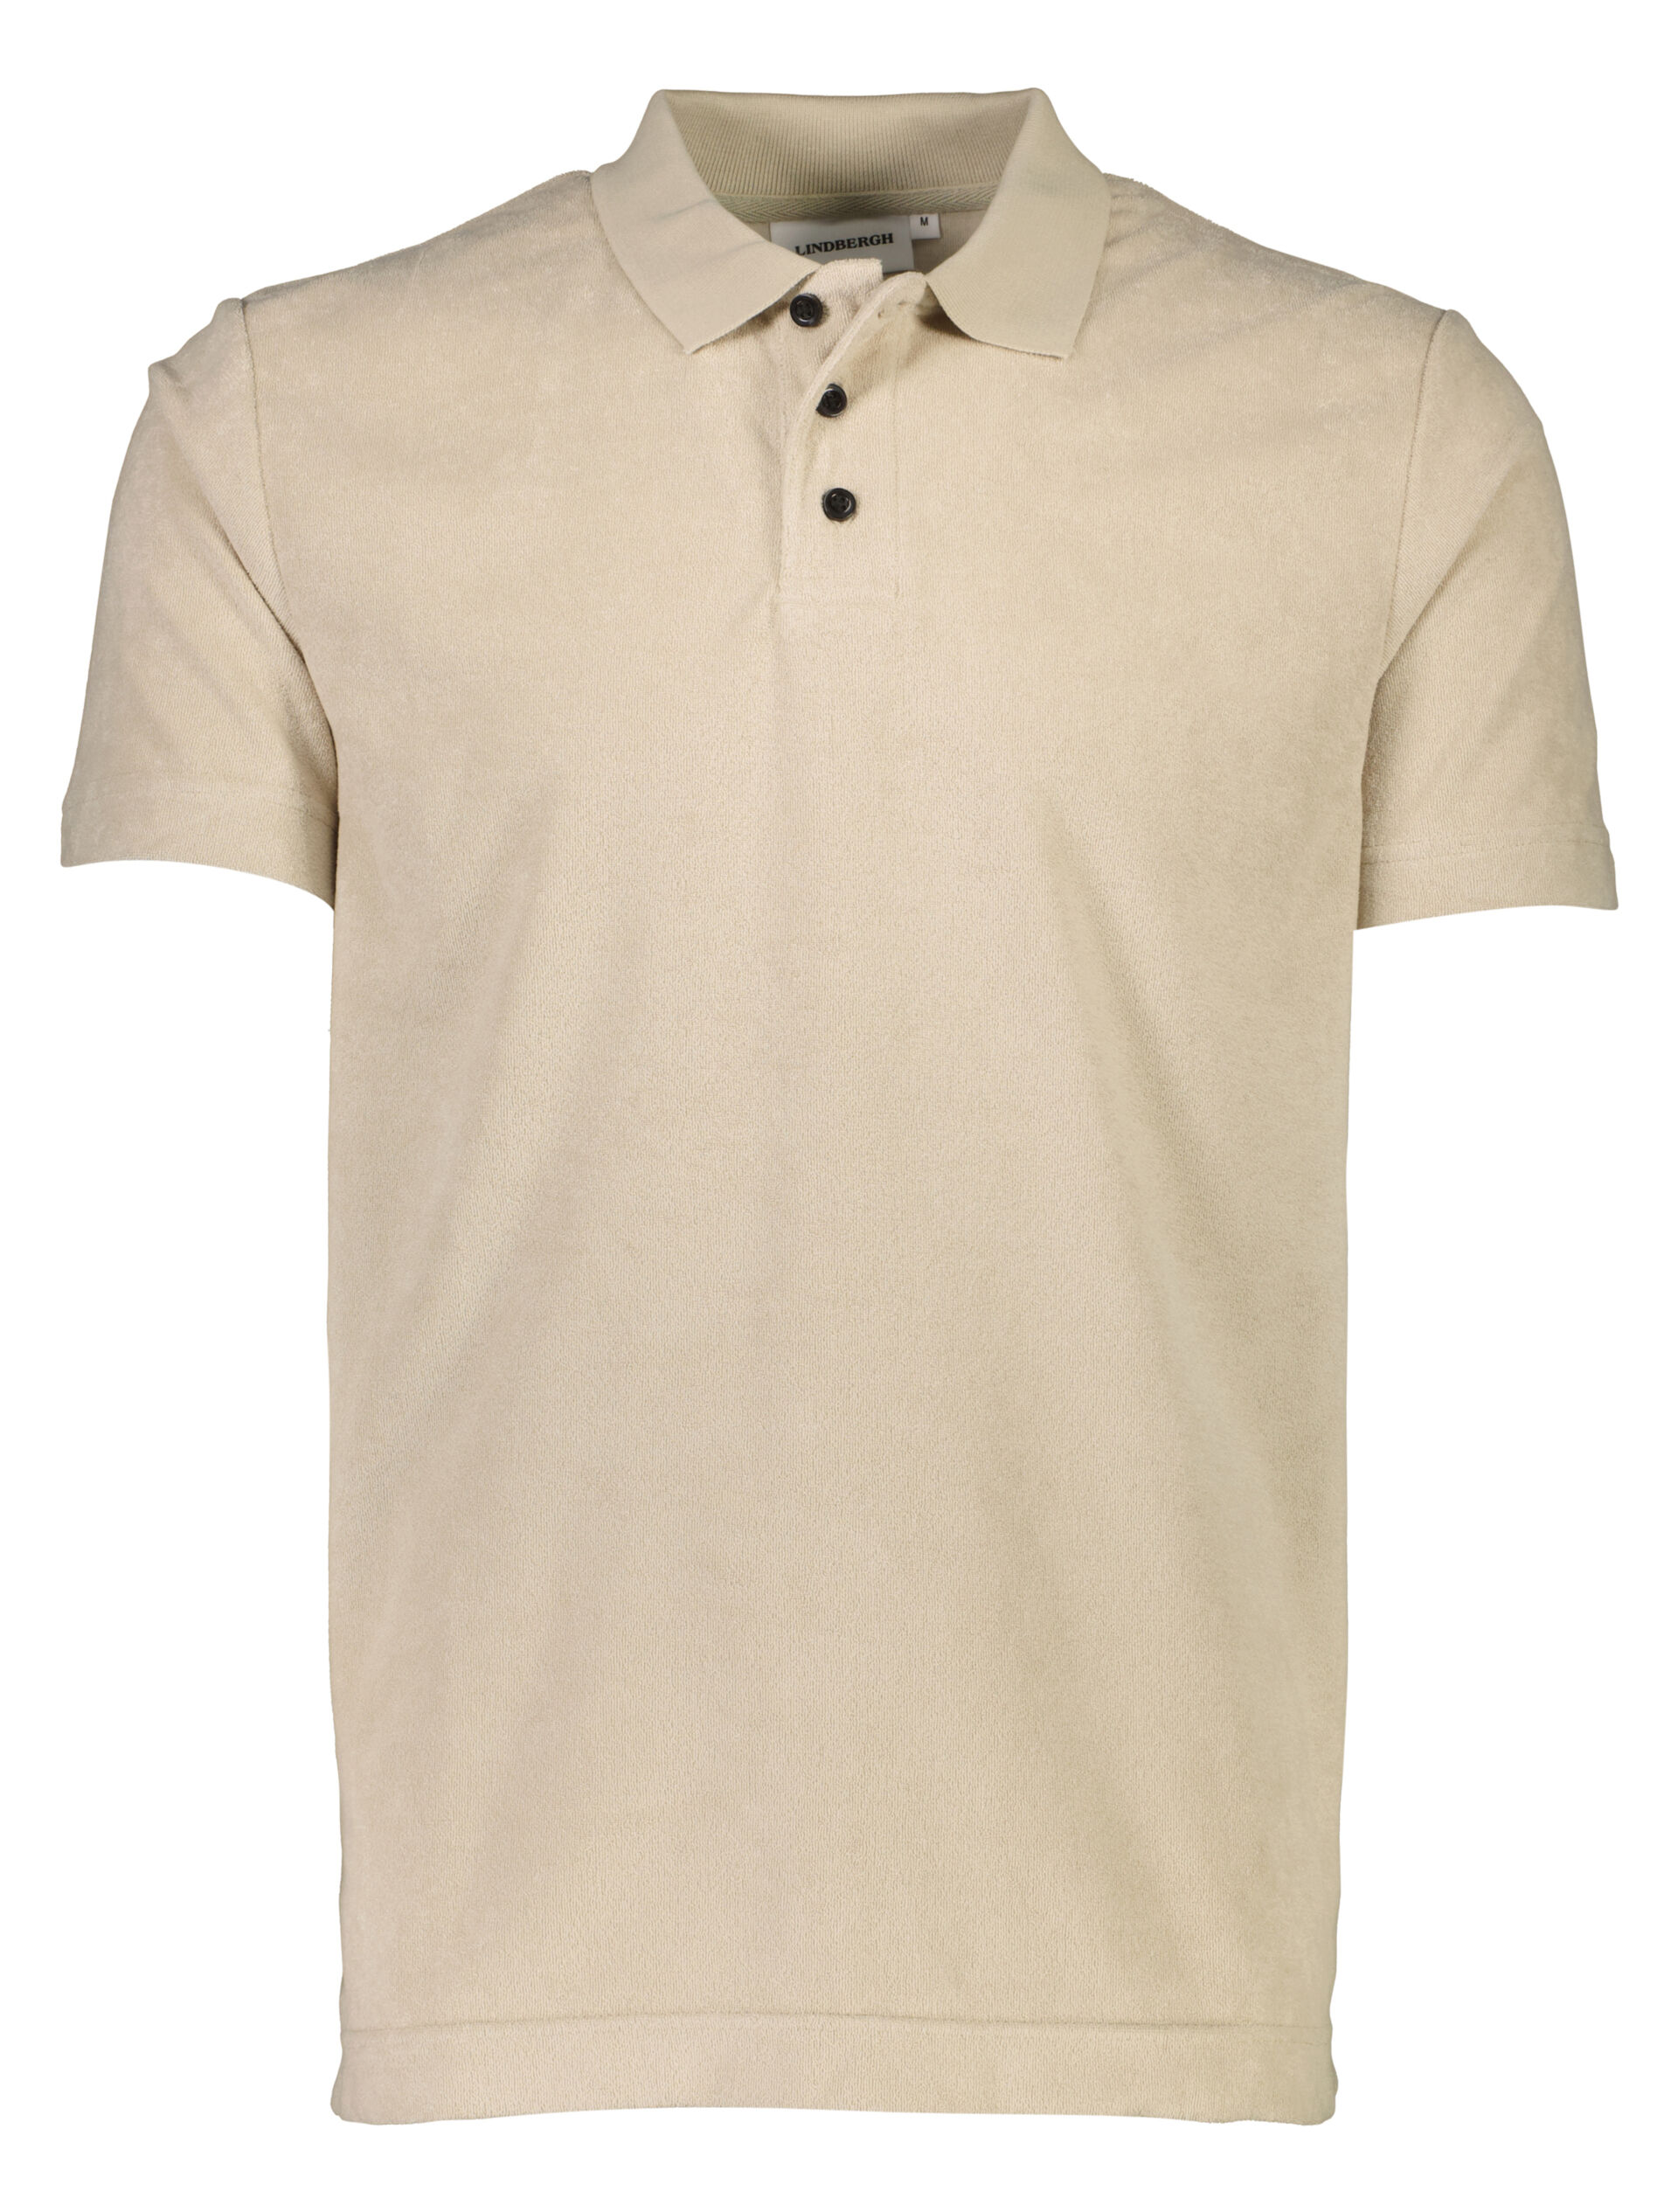 Polo shirt Polo shirt Sand 30-404263